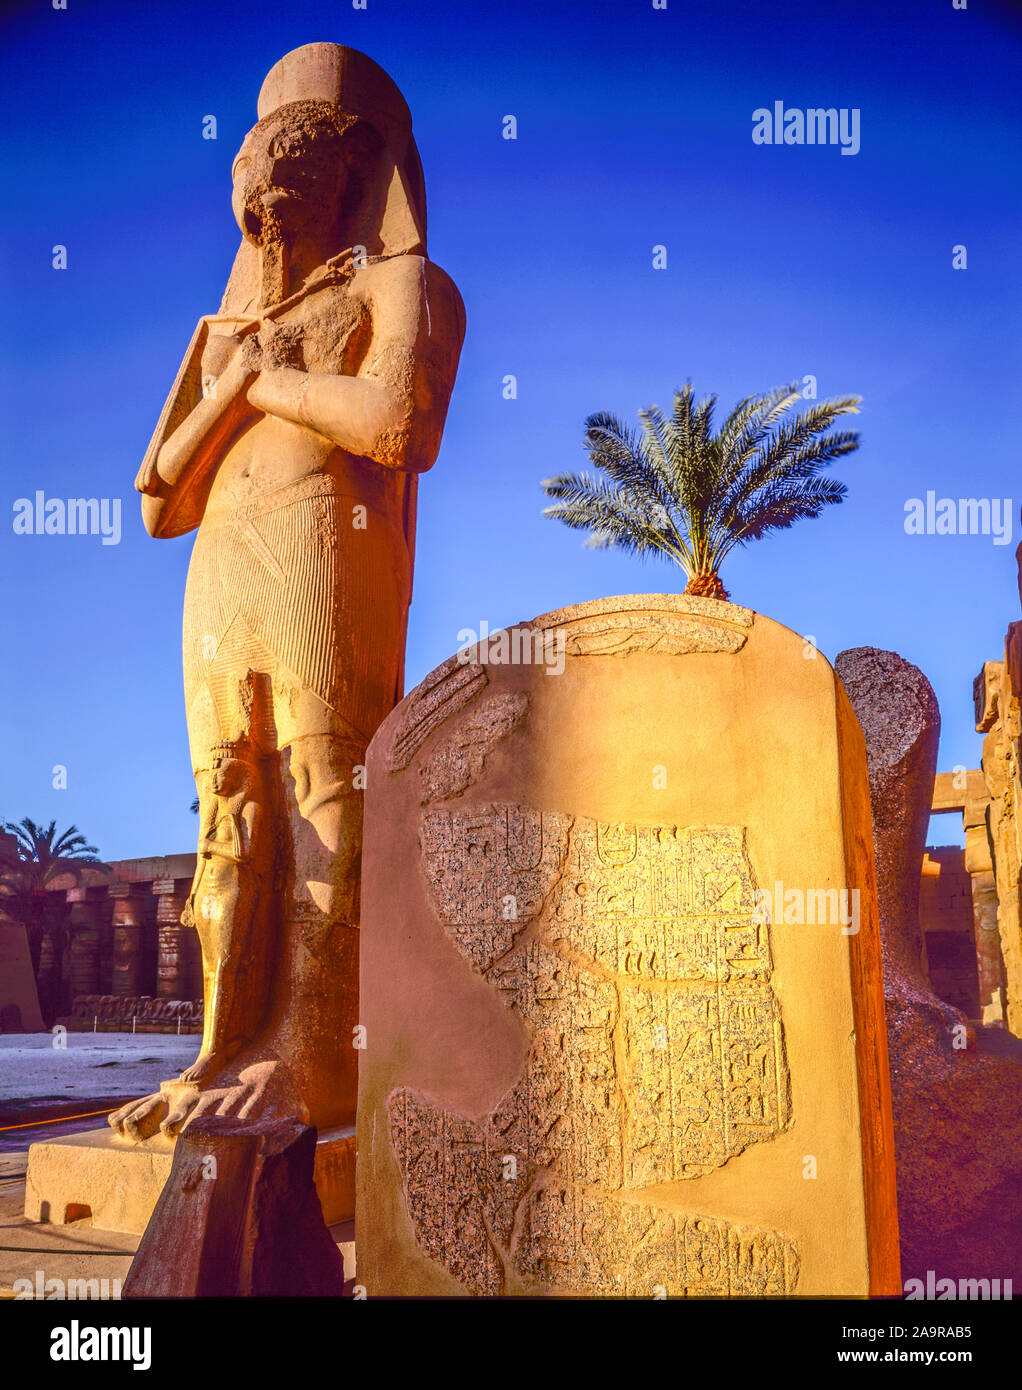 Tallas de colosos, el Templo de Luxor en Luxor, Egipto, antigua ciudad de Tebas, Río Nilo, Antiguo Templo Egipcio, el desierto del Sahara Foto de stock